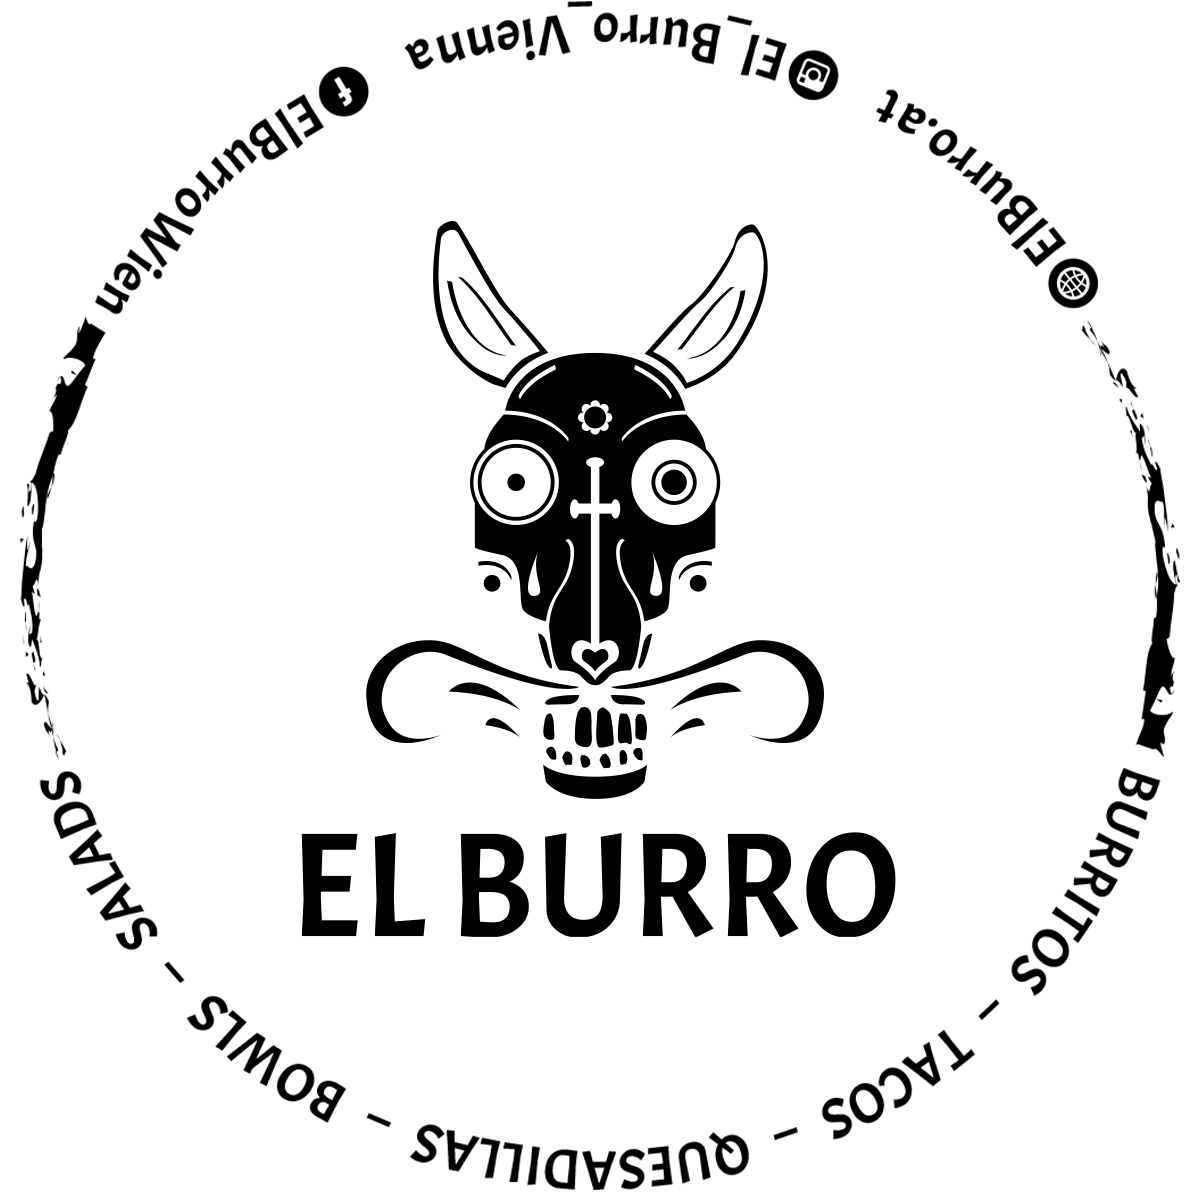 Projekte | El Burro Wien